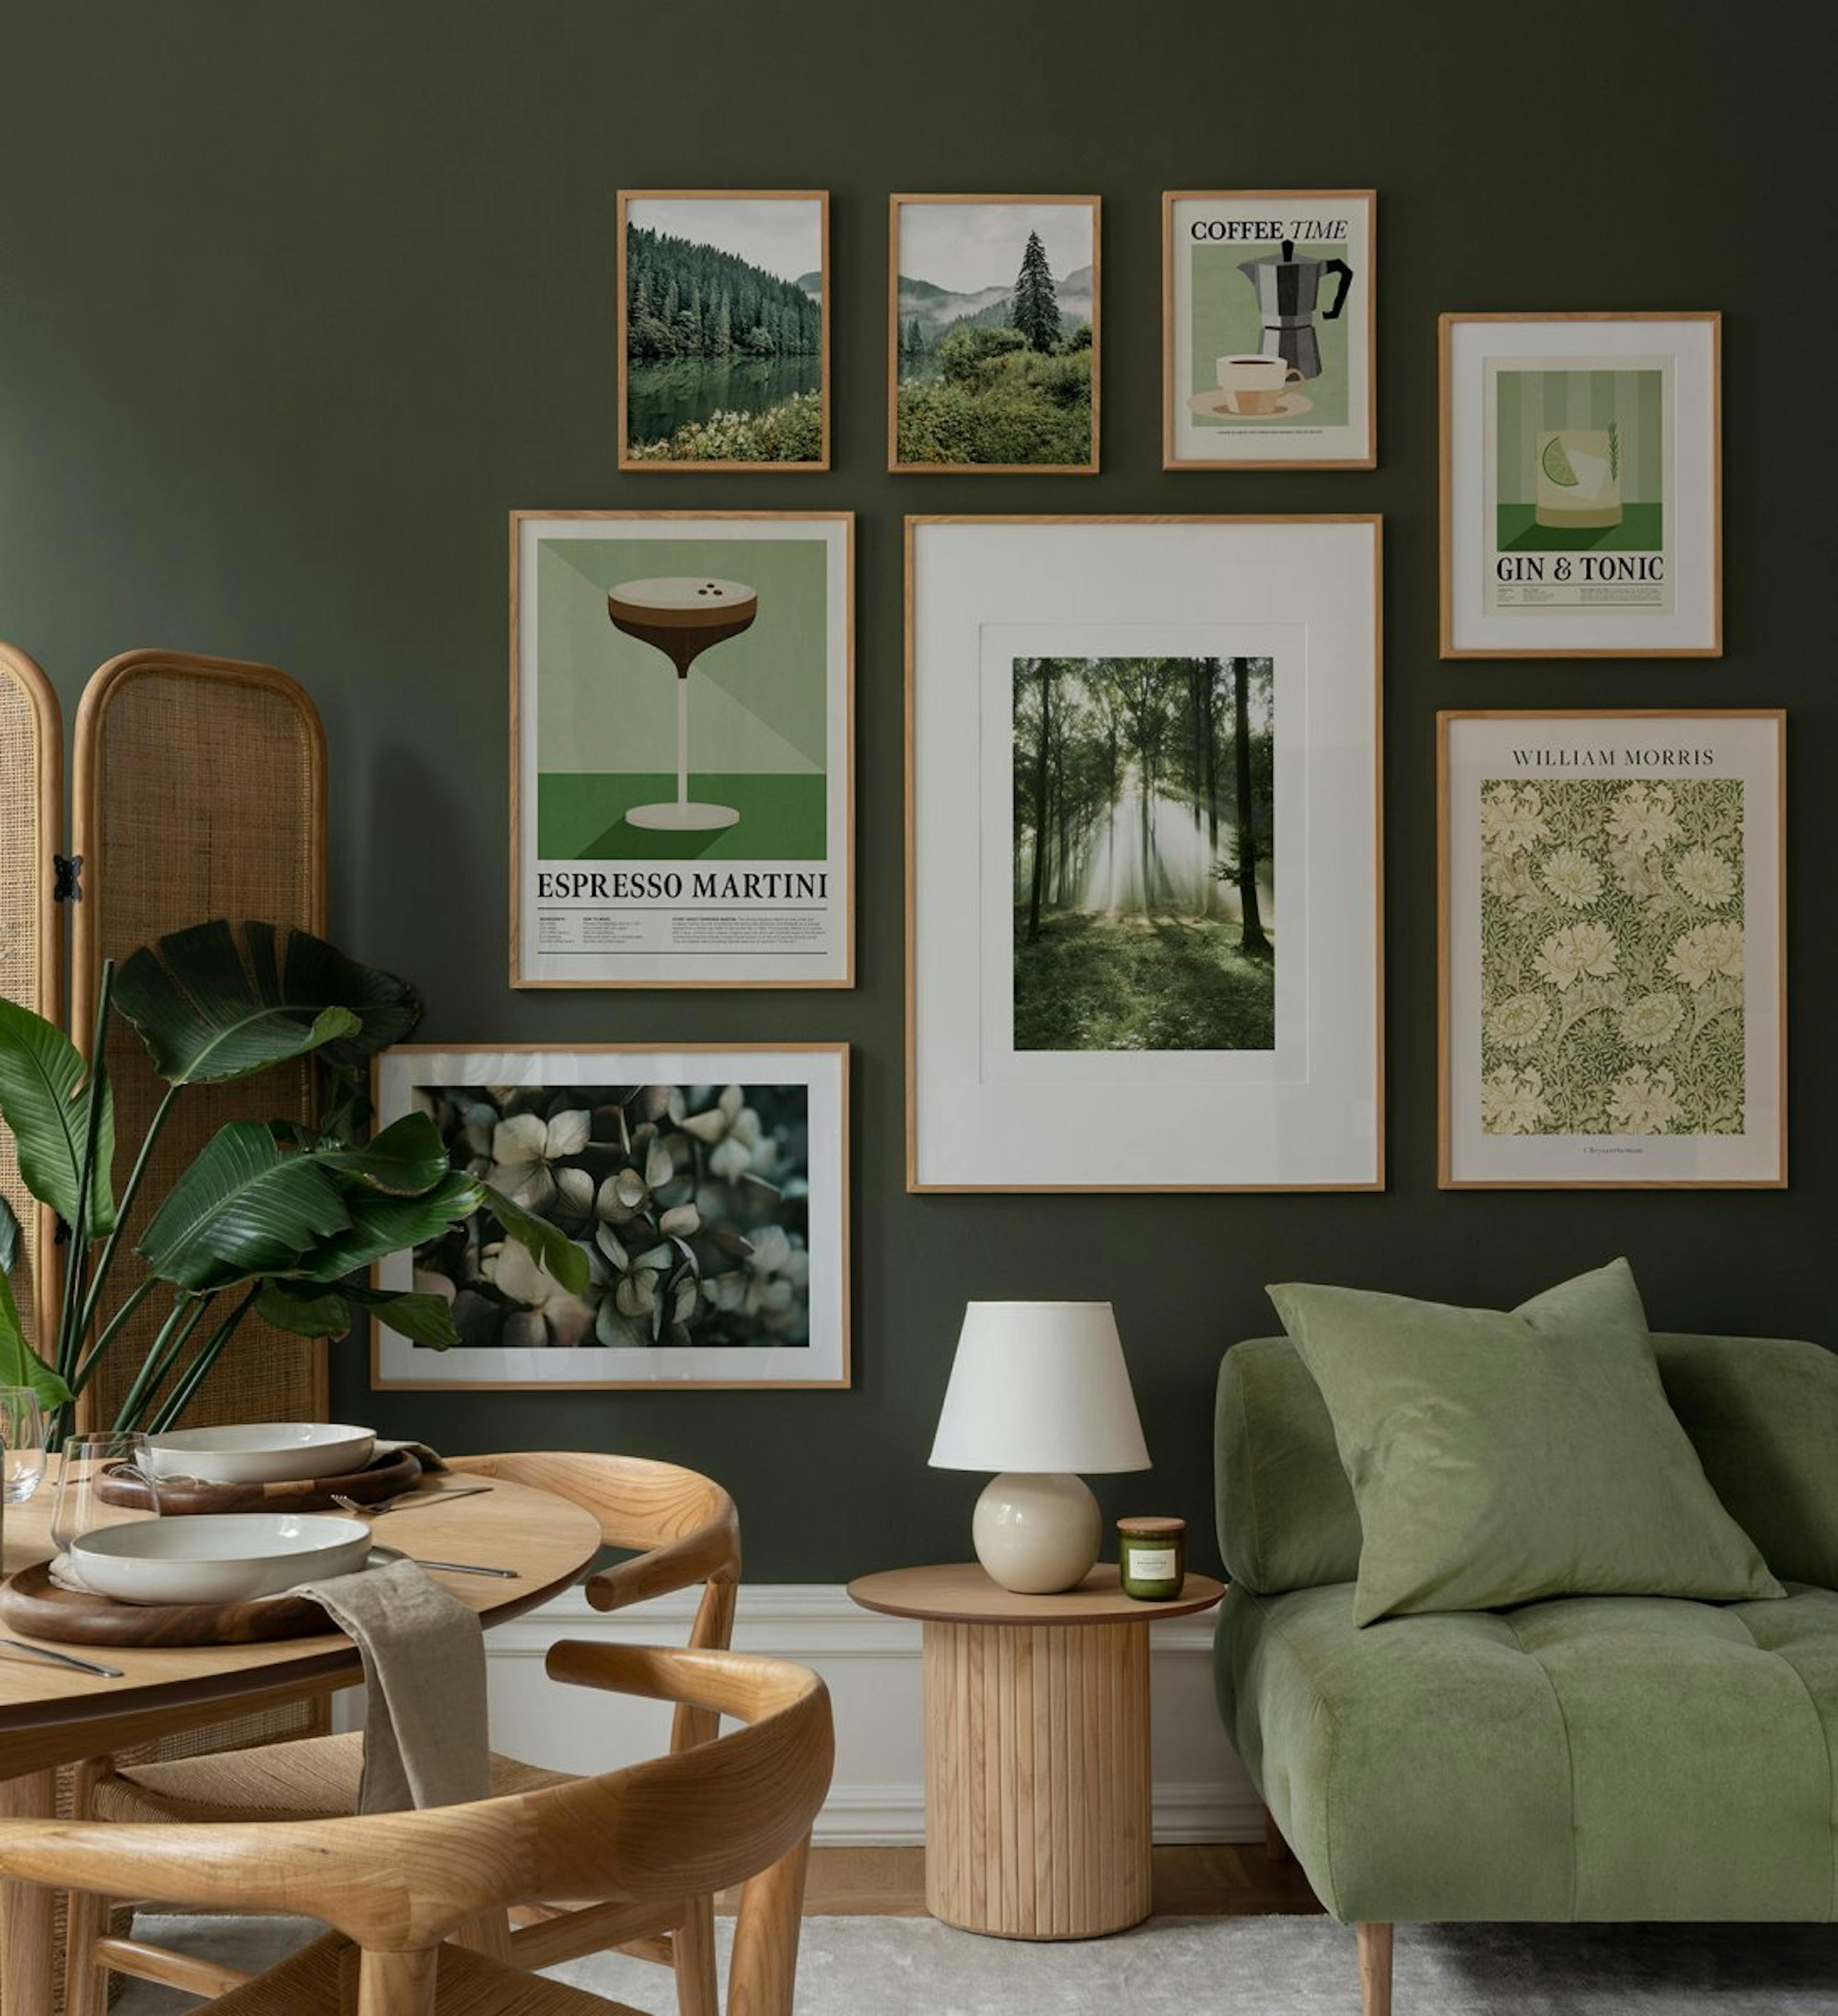 Mur de cuisine dans les tons verts et beiges avec une combinaison moderne de nature, de fleurs et d’imprimés rétro avec des cadr